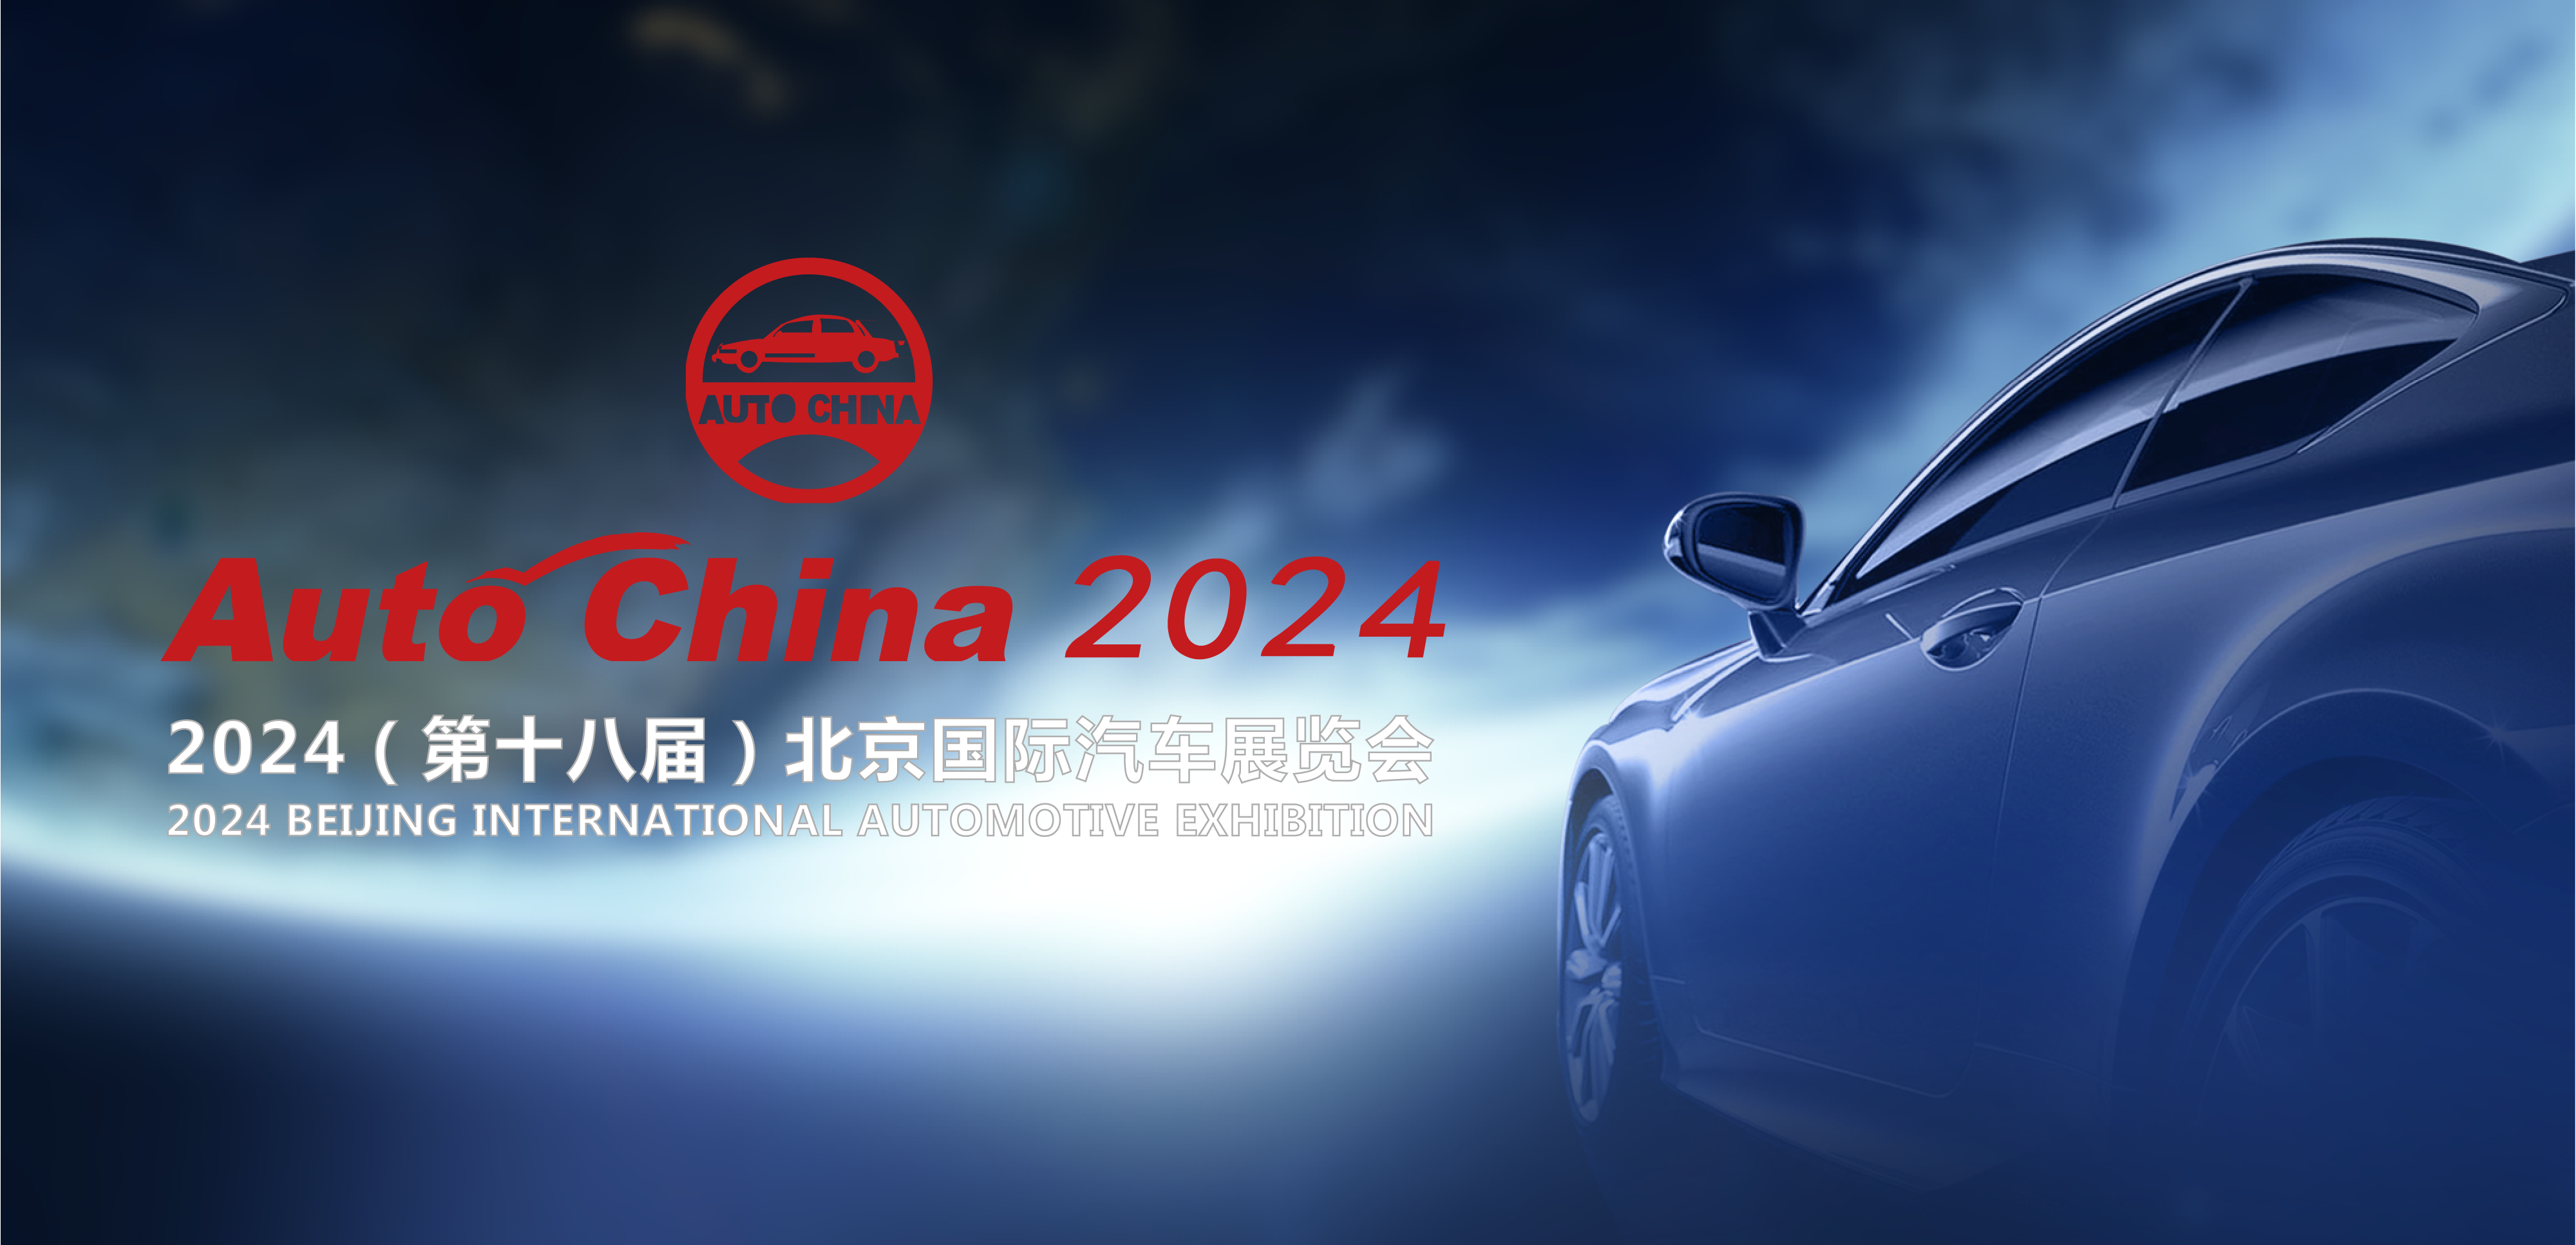 一锤定音:北京车展是今年全球最重要的顶级车展_汽车